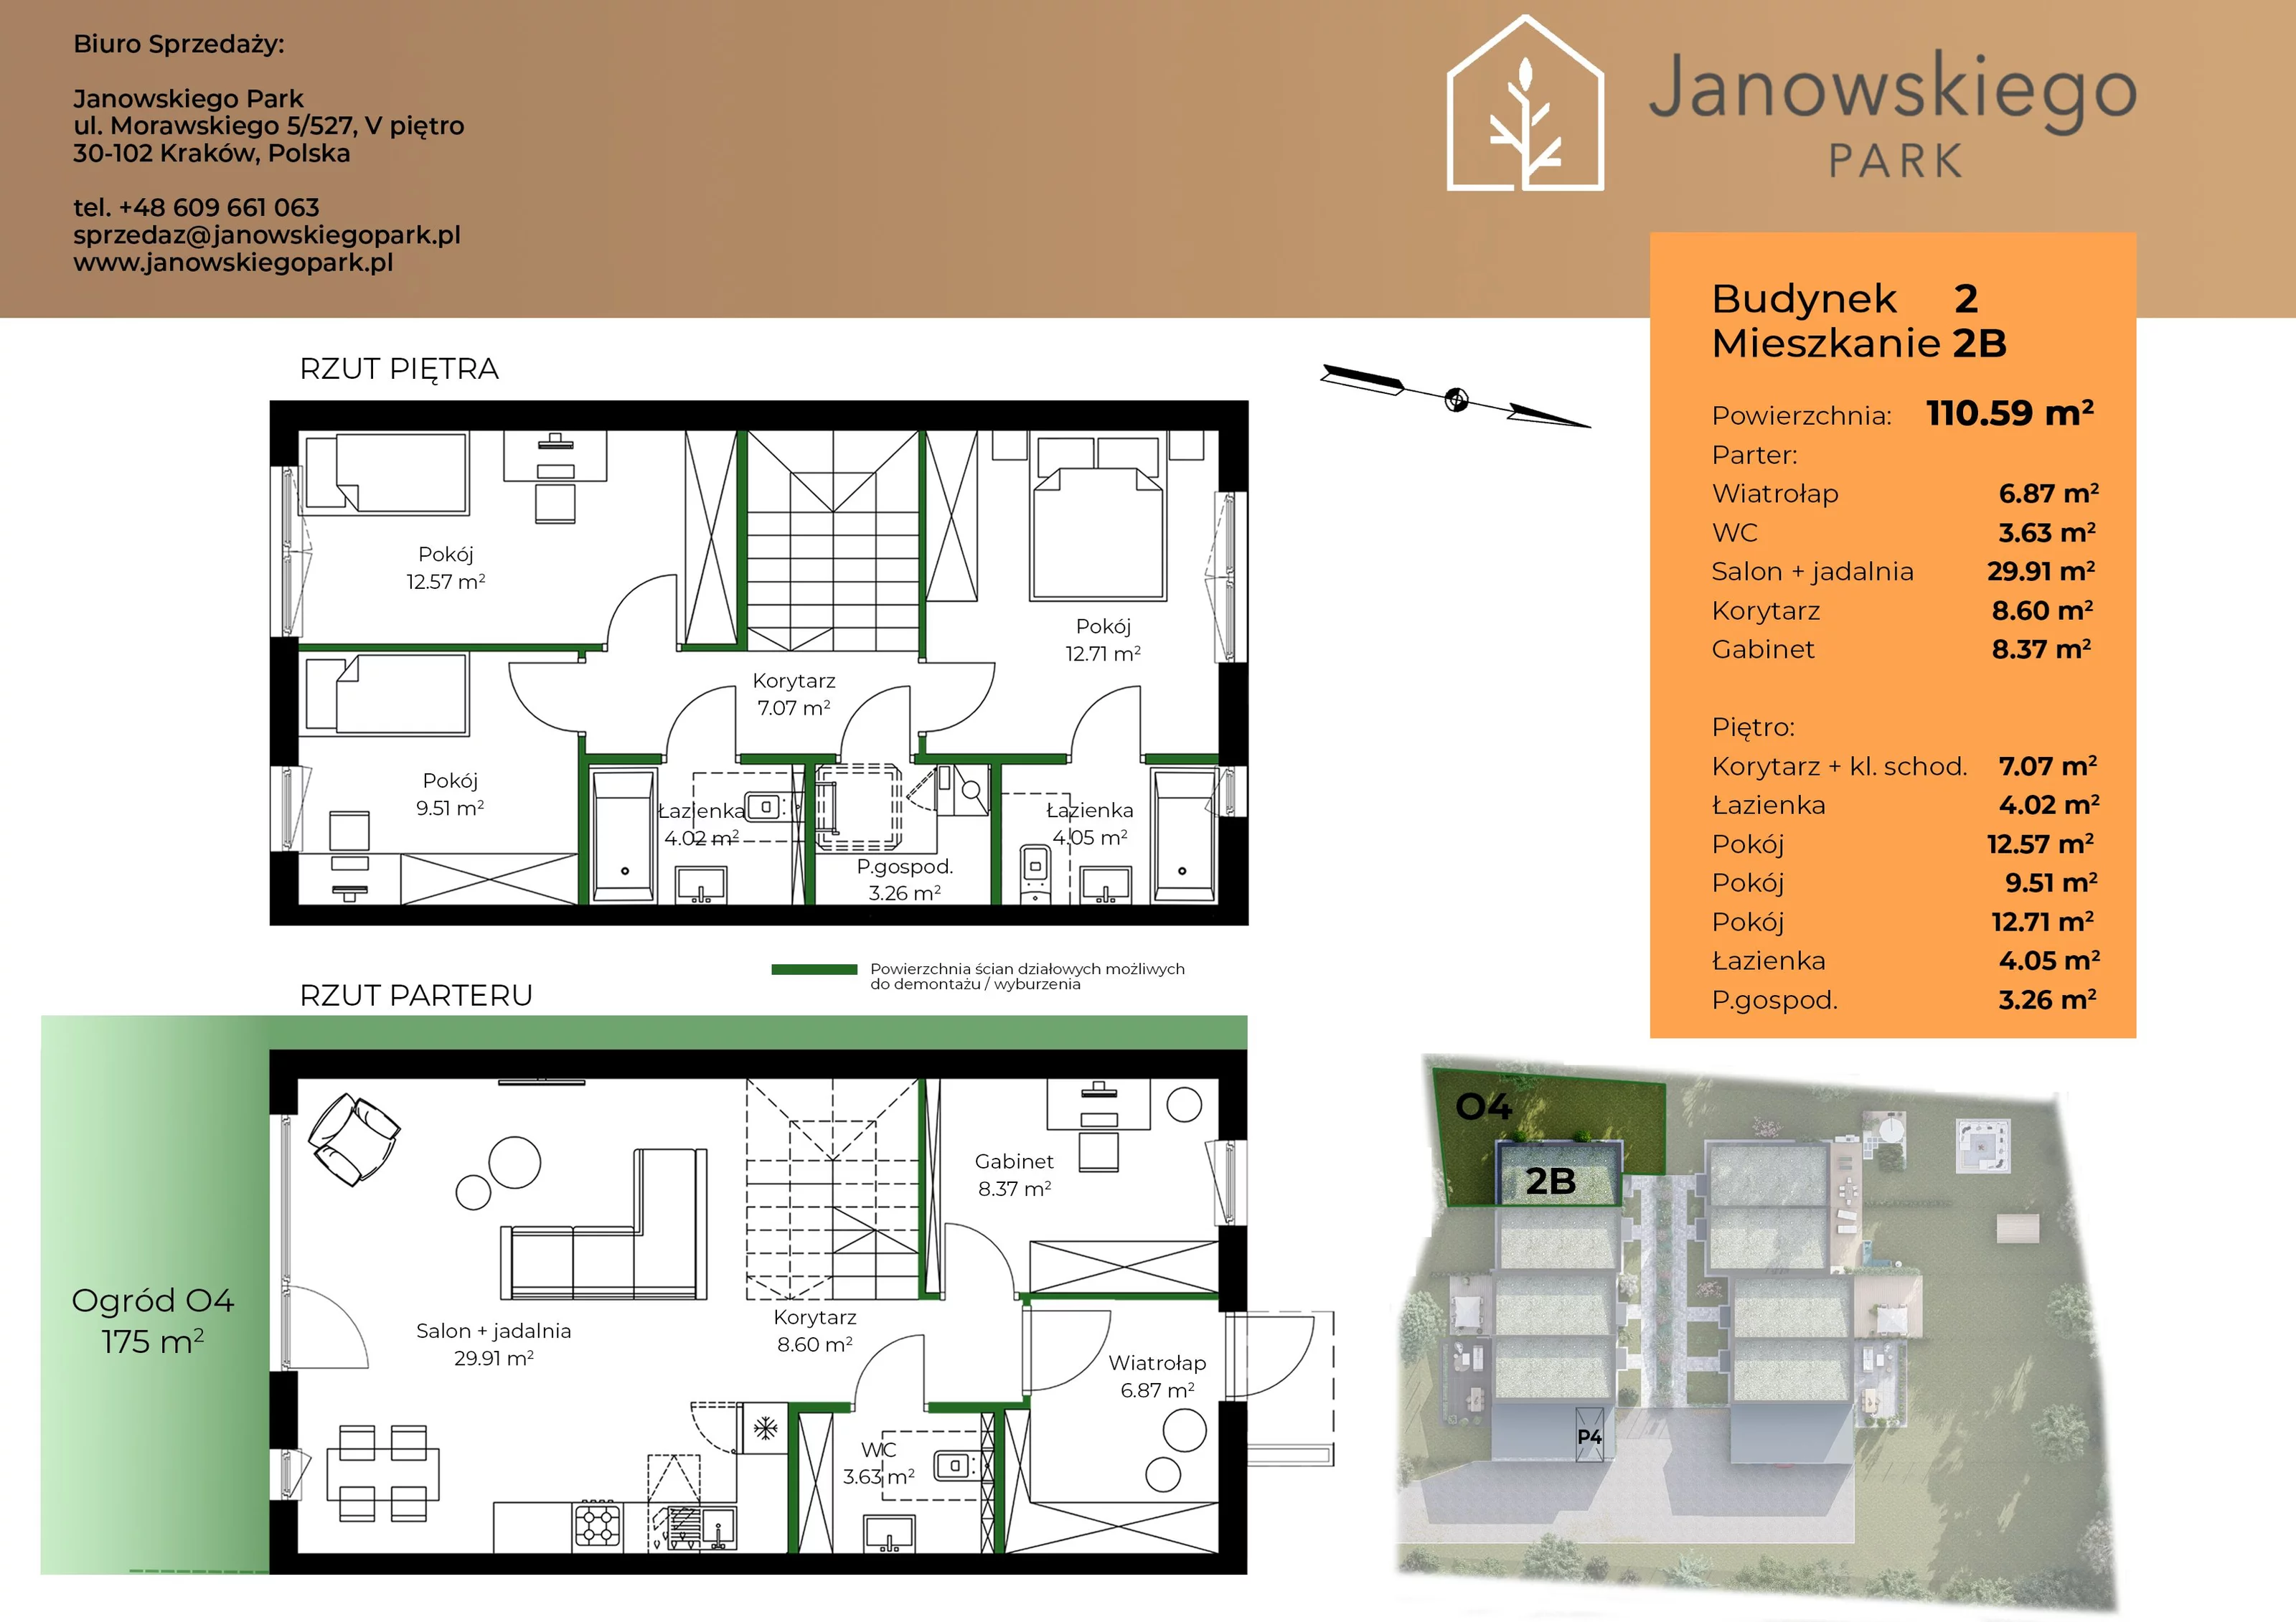 Mieszkanie 110,59 m², parter, oferta nr B2-2B, Janowskiego Park, Kraków, Swoszowice, Kliny Borkowskie, ul. Jana Janowskiego